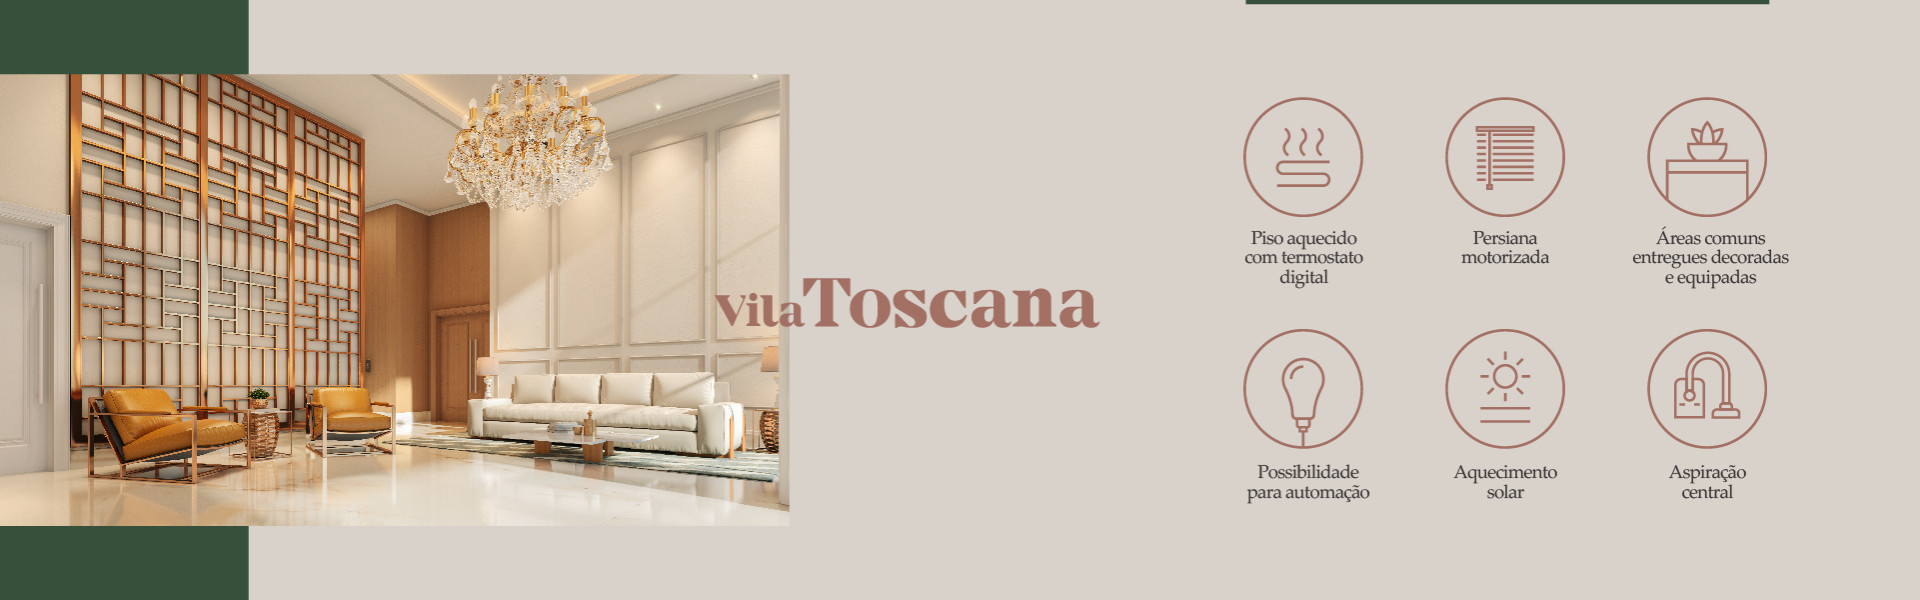 Publicidade - Vila Toscana